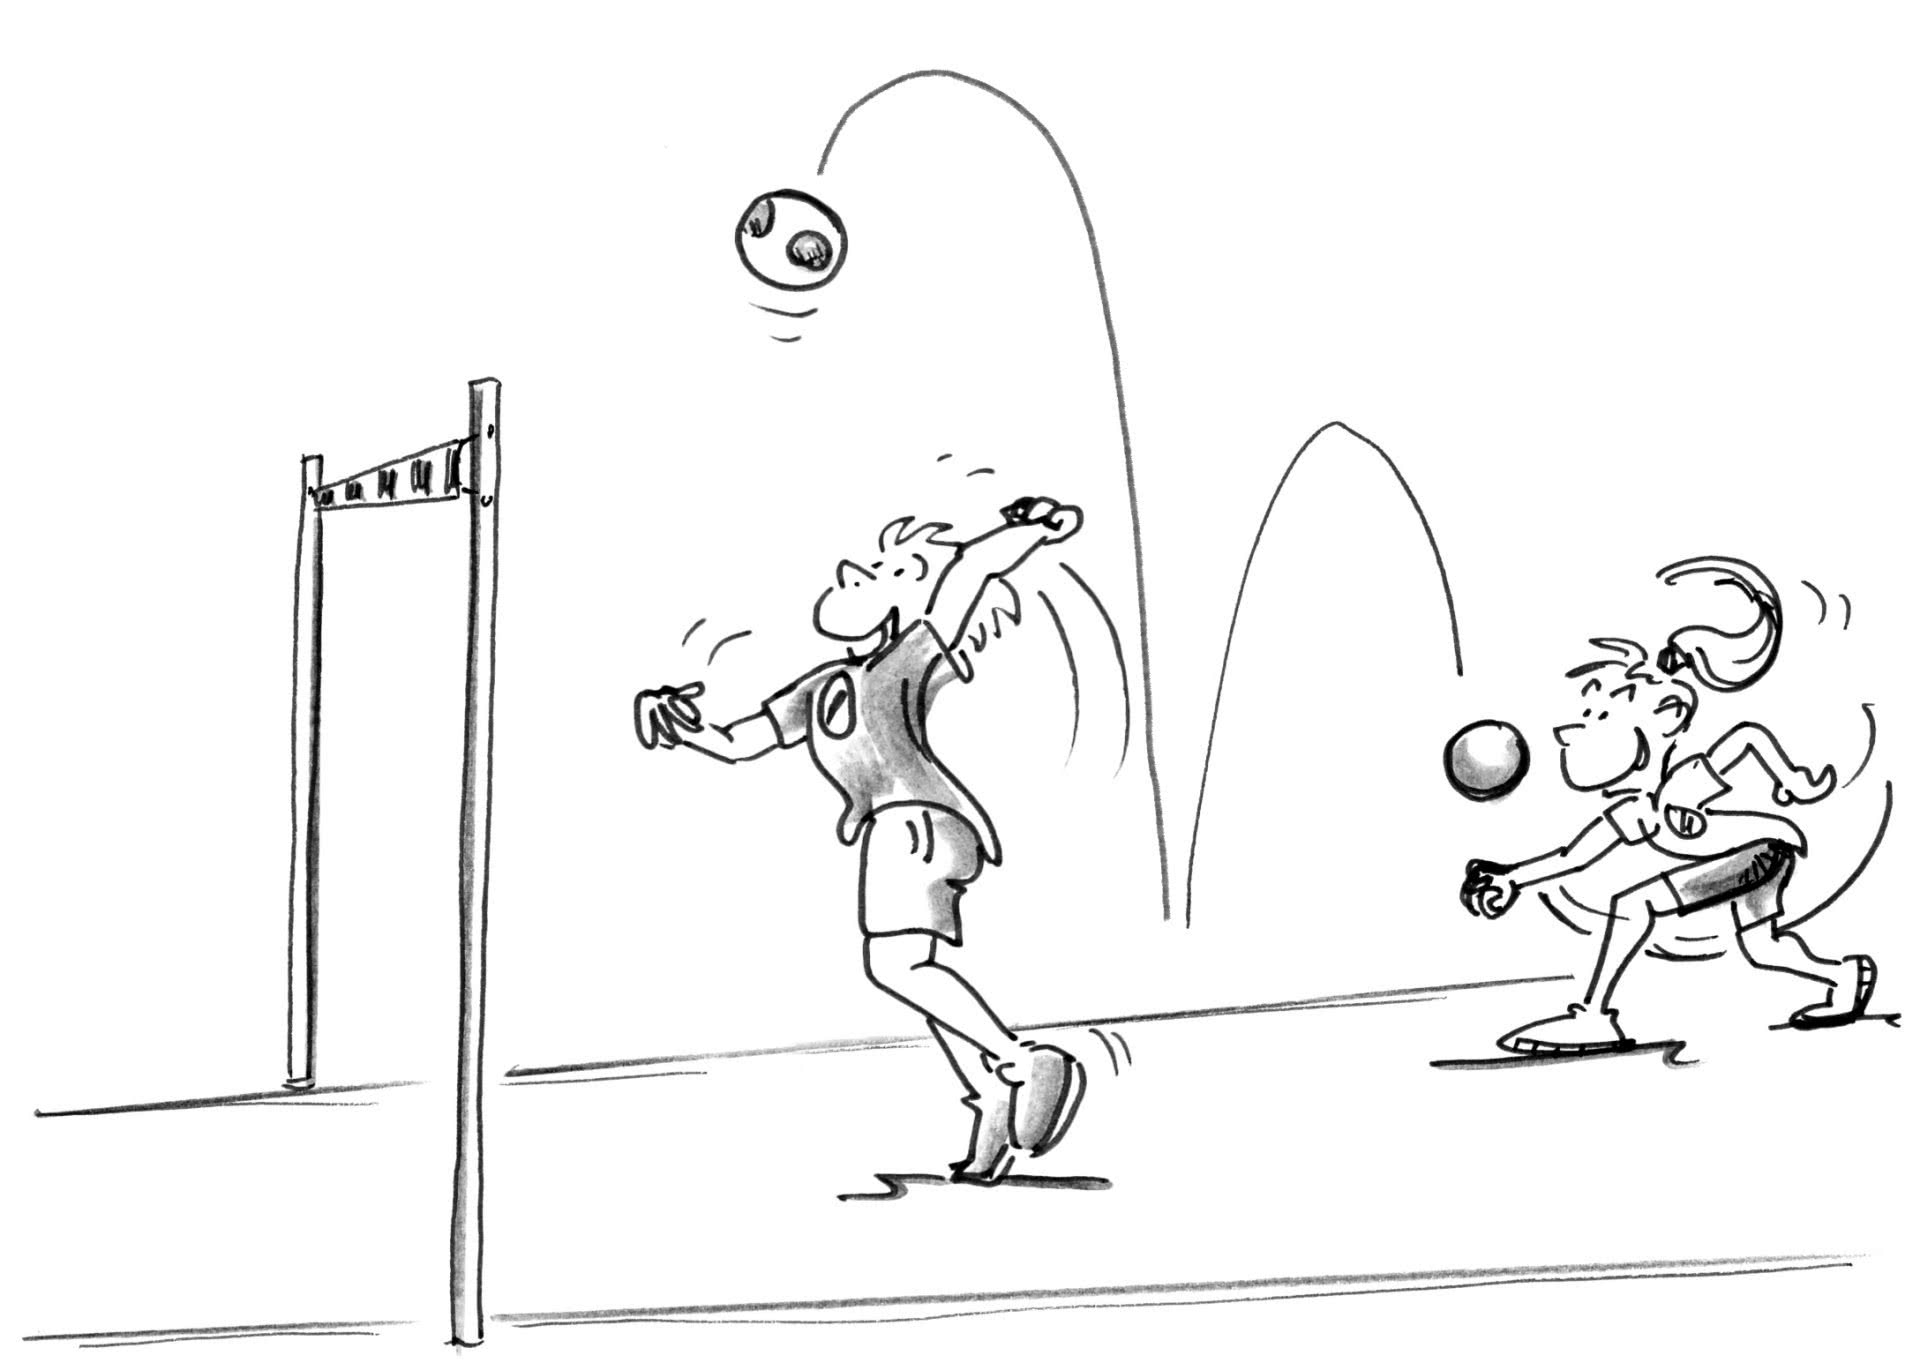 Dessin: un joueur s'apprête à frapper un ballon après une passe d'un coéquipier.